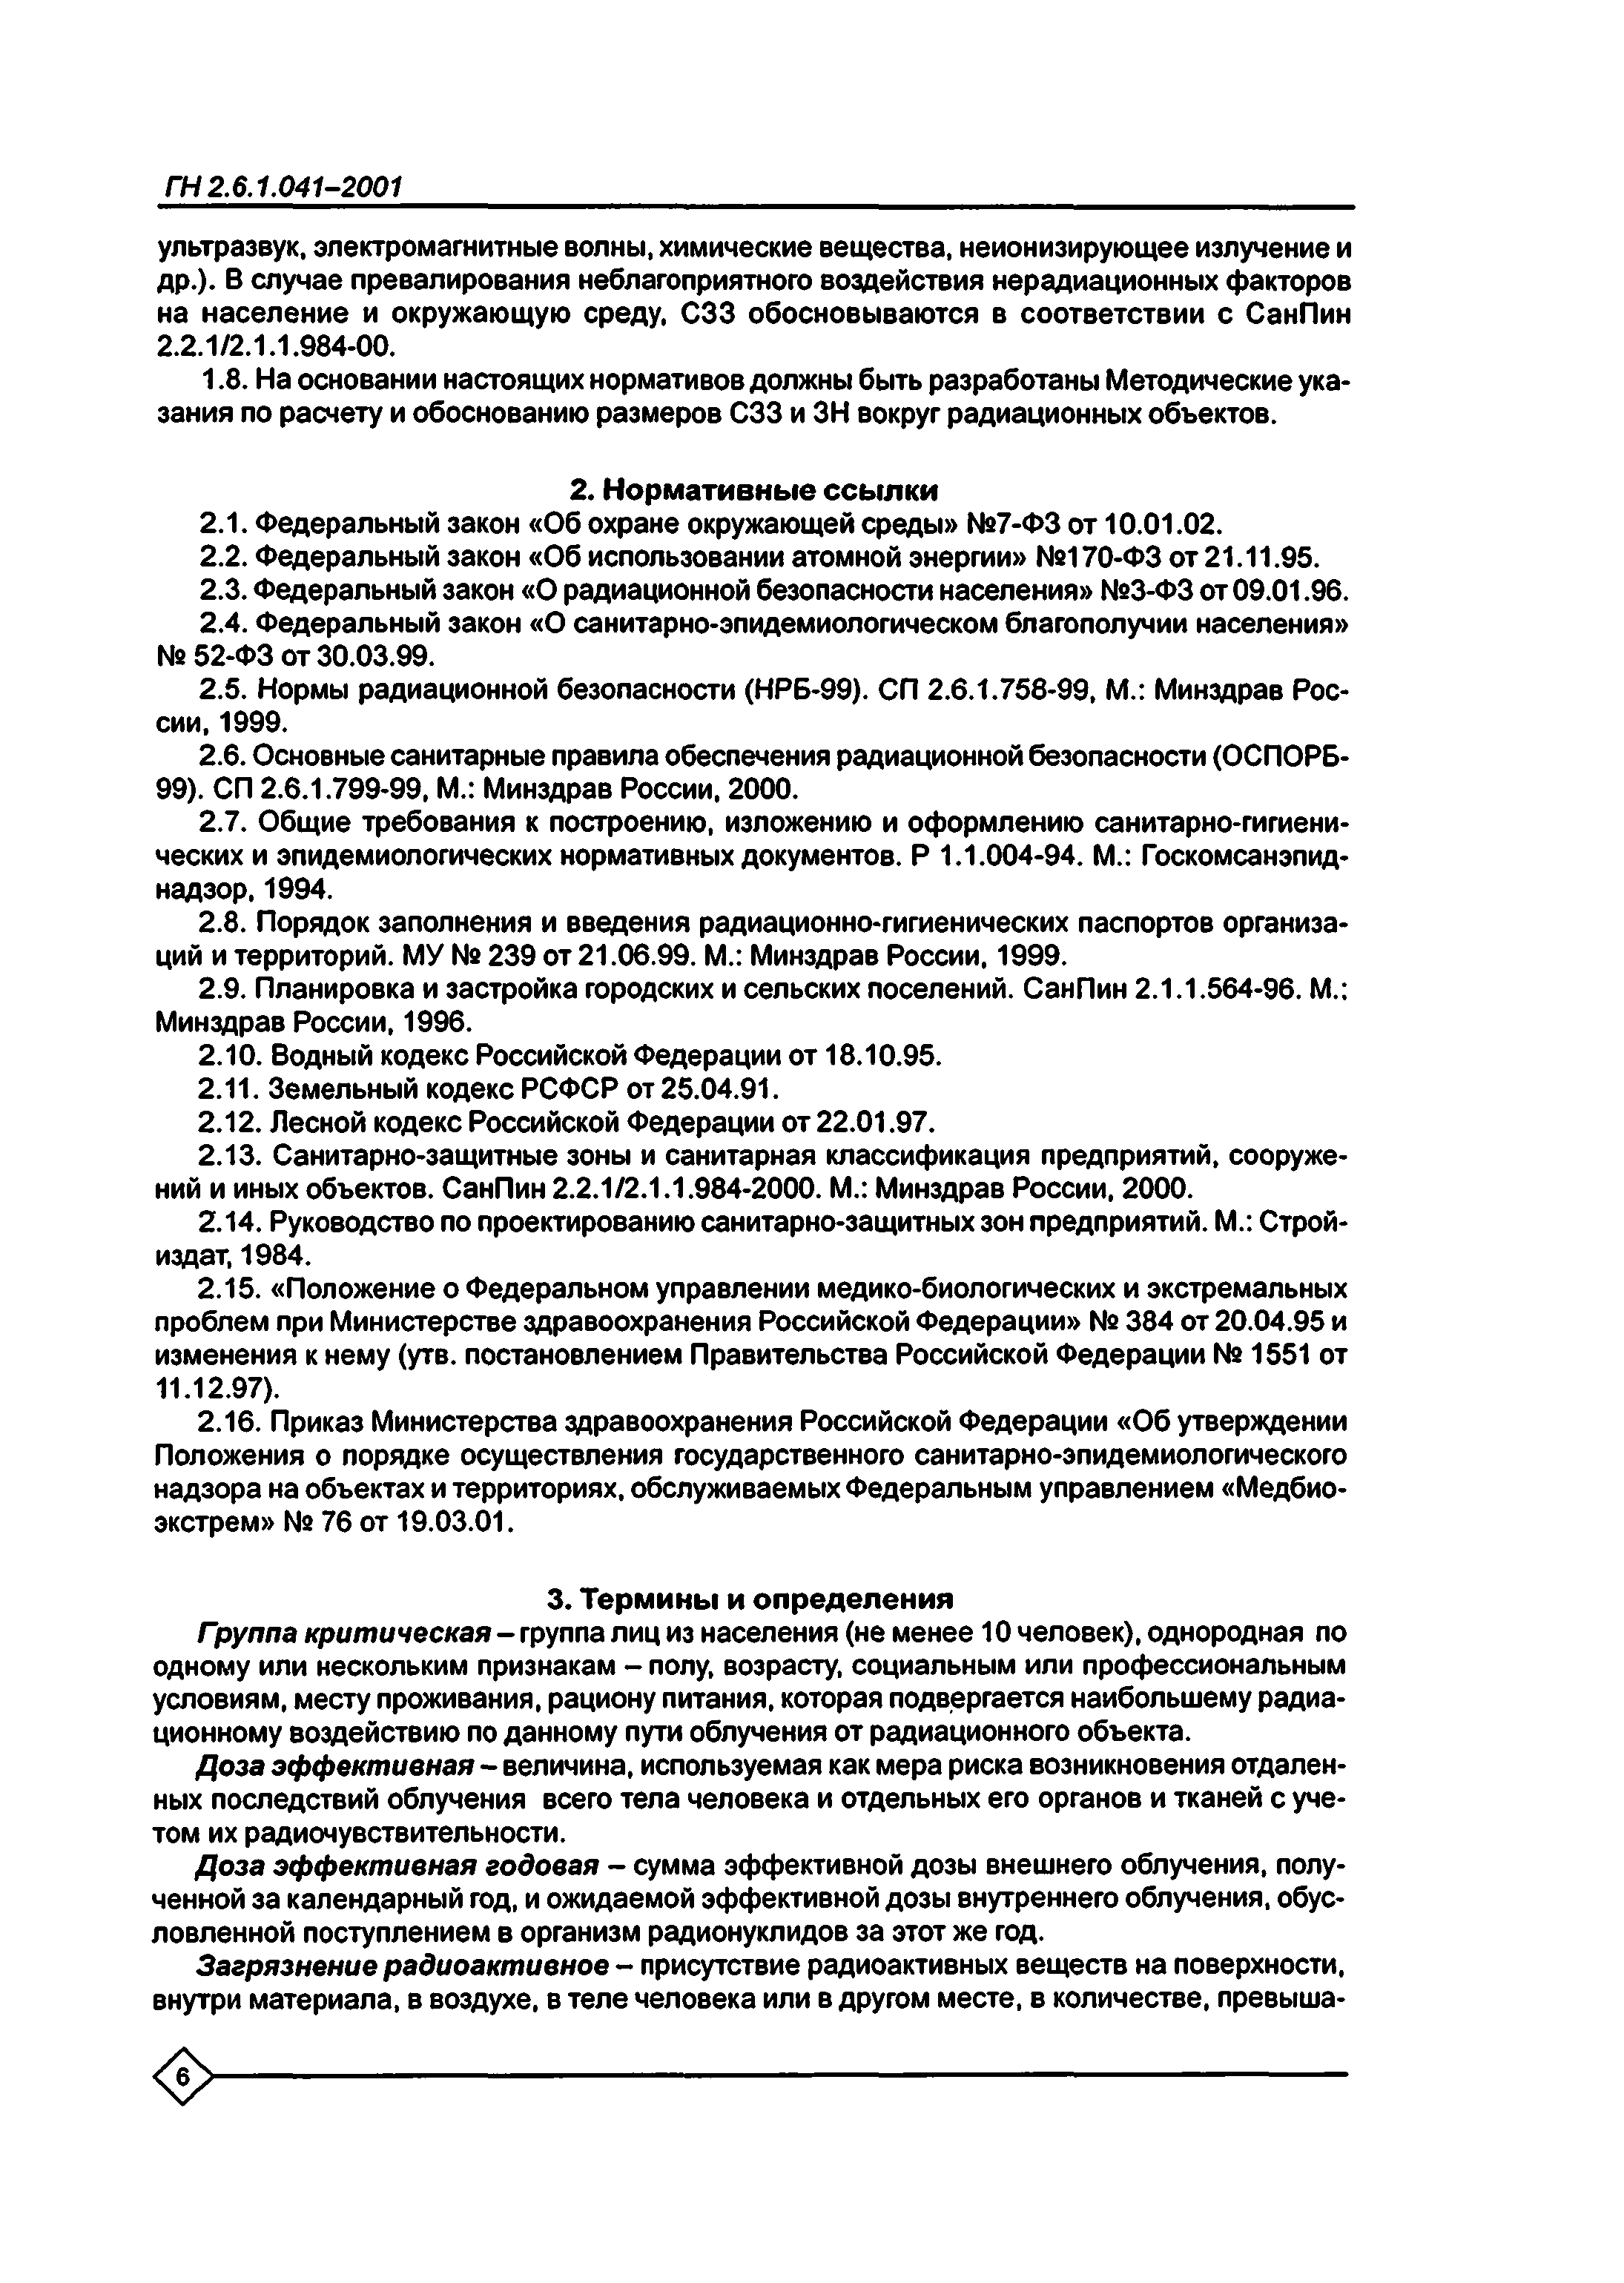 ГН 2.6.1.041-2001